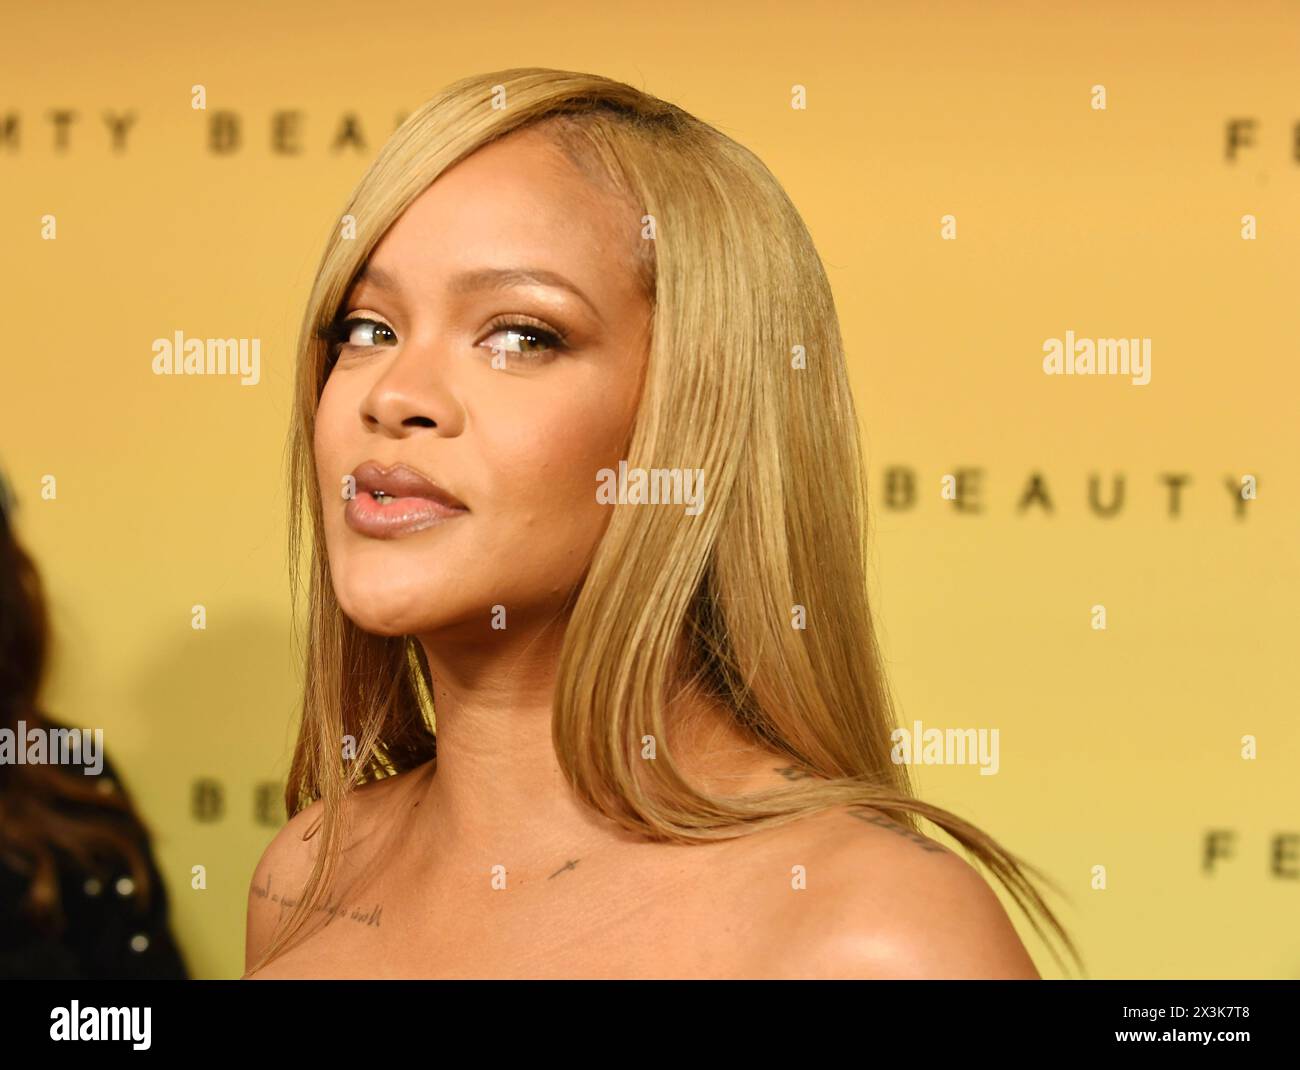 LOS ANGELES, CALIFORNIA - APRILE 26: Rihanna partecipa al suo coinvolgente evento di bellezza in onore del lancio del nuovo prodotto di Fenty Beauty, Soft'lit Naturally Lu Foto Stock